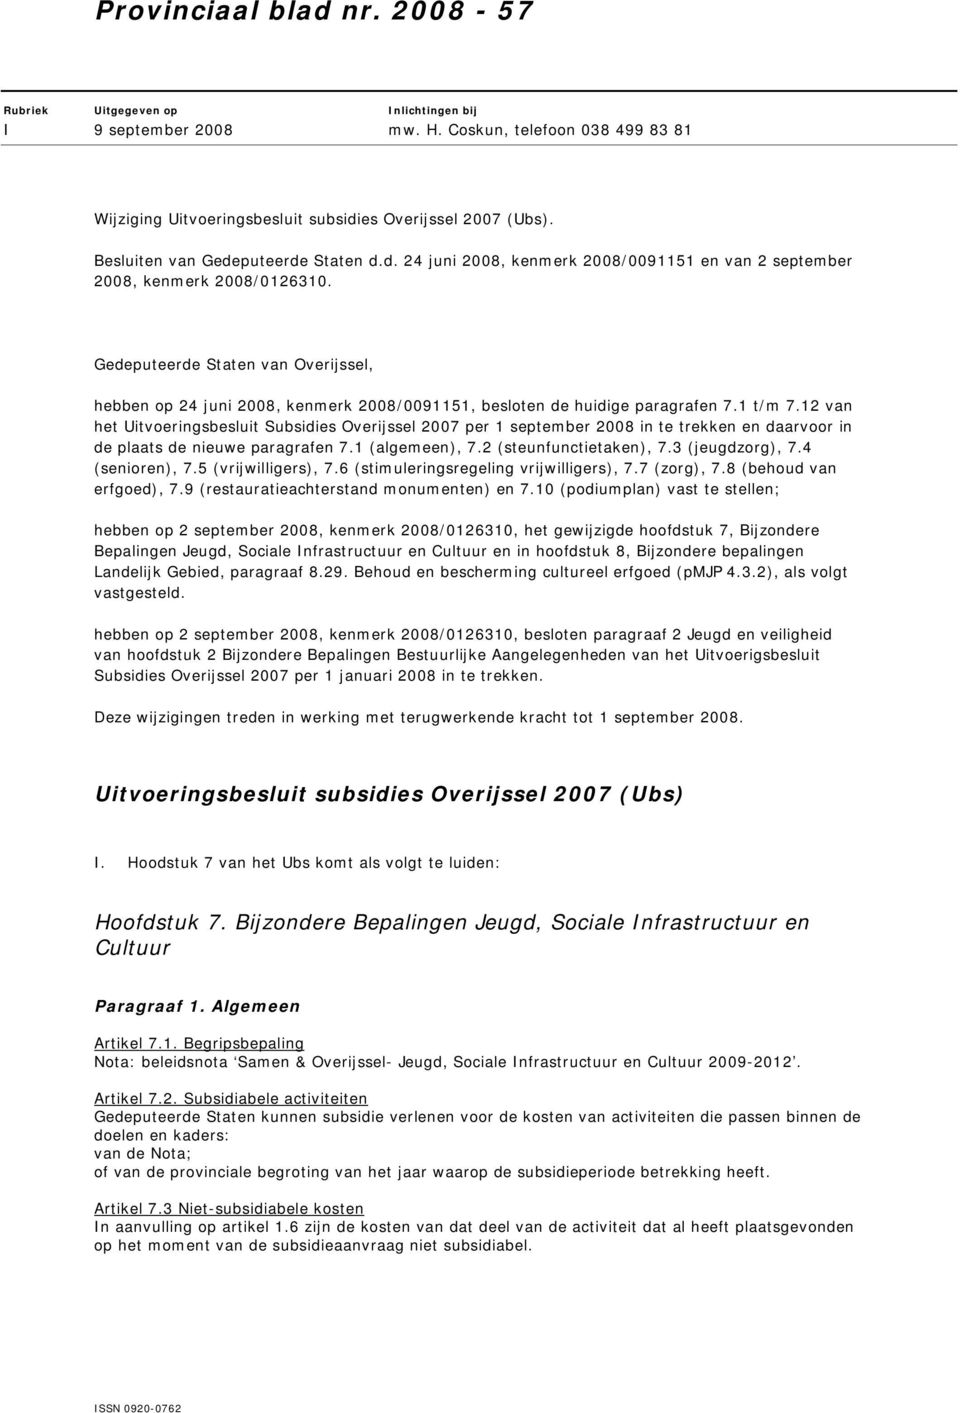 Gedeputeerde Staten van Overijssel, hebben op 24 juni 2008, kenmerk 2008/0091151, besloten de huidige paragrafen 7.1 t/m 7.